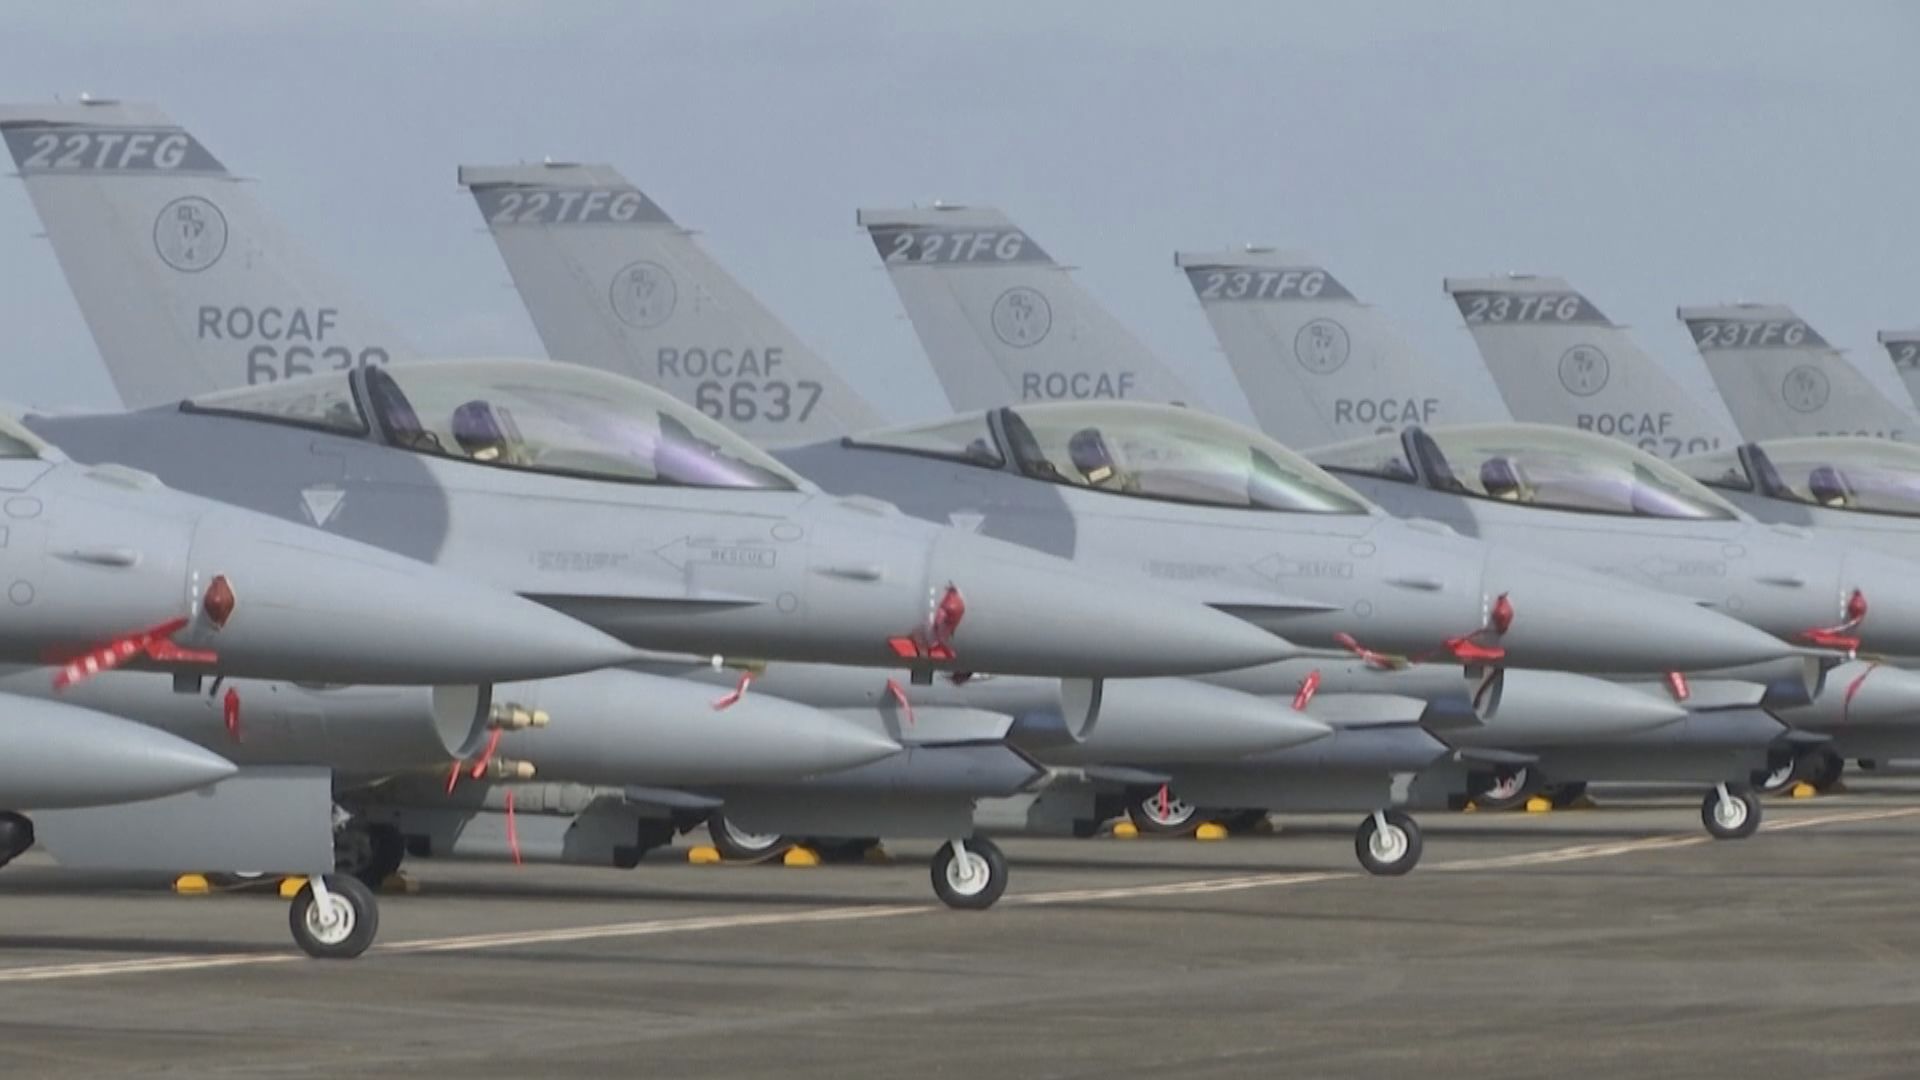 美國批准5億美元對台軍售 包括F-16戰機紅外線追蹤系統